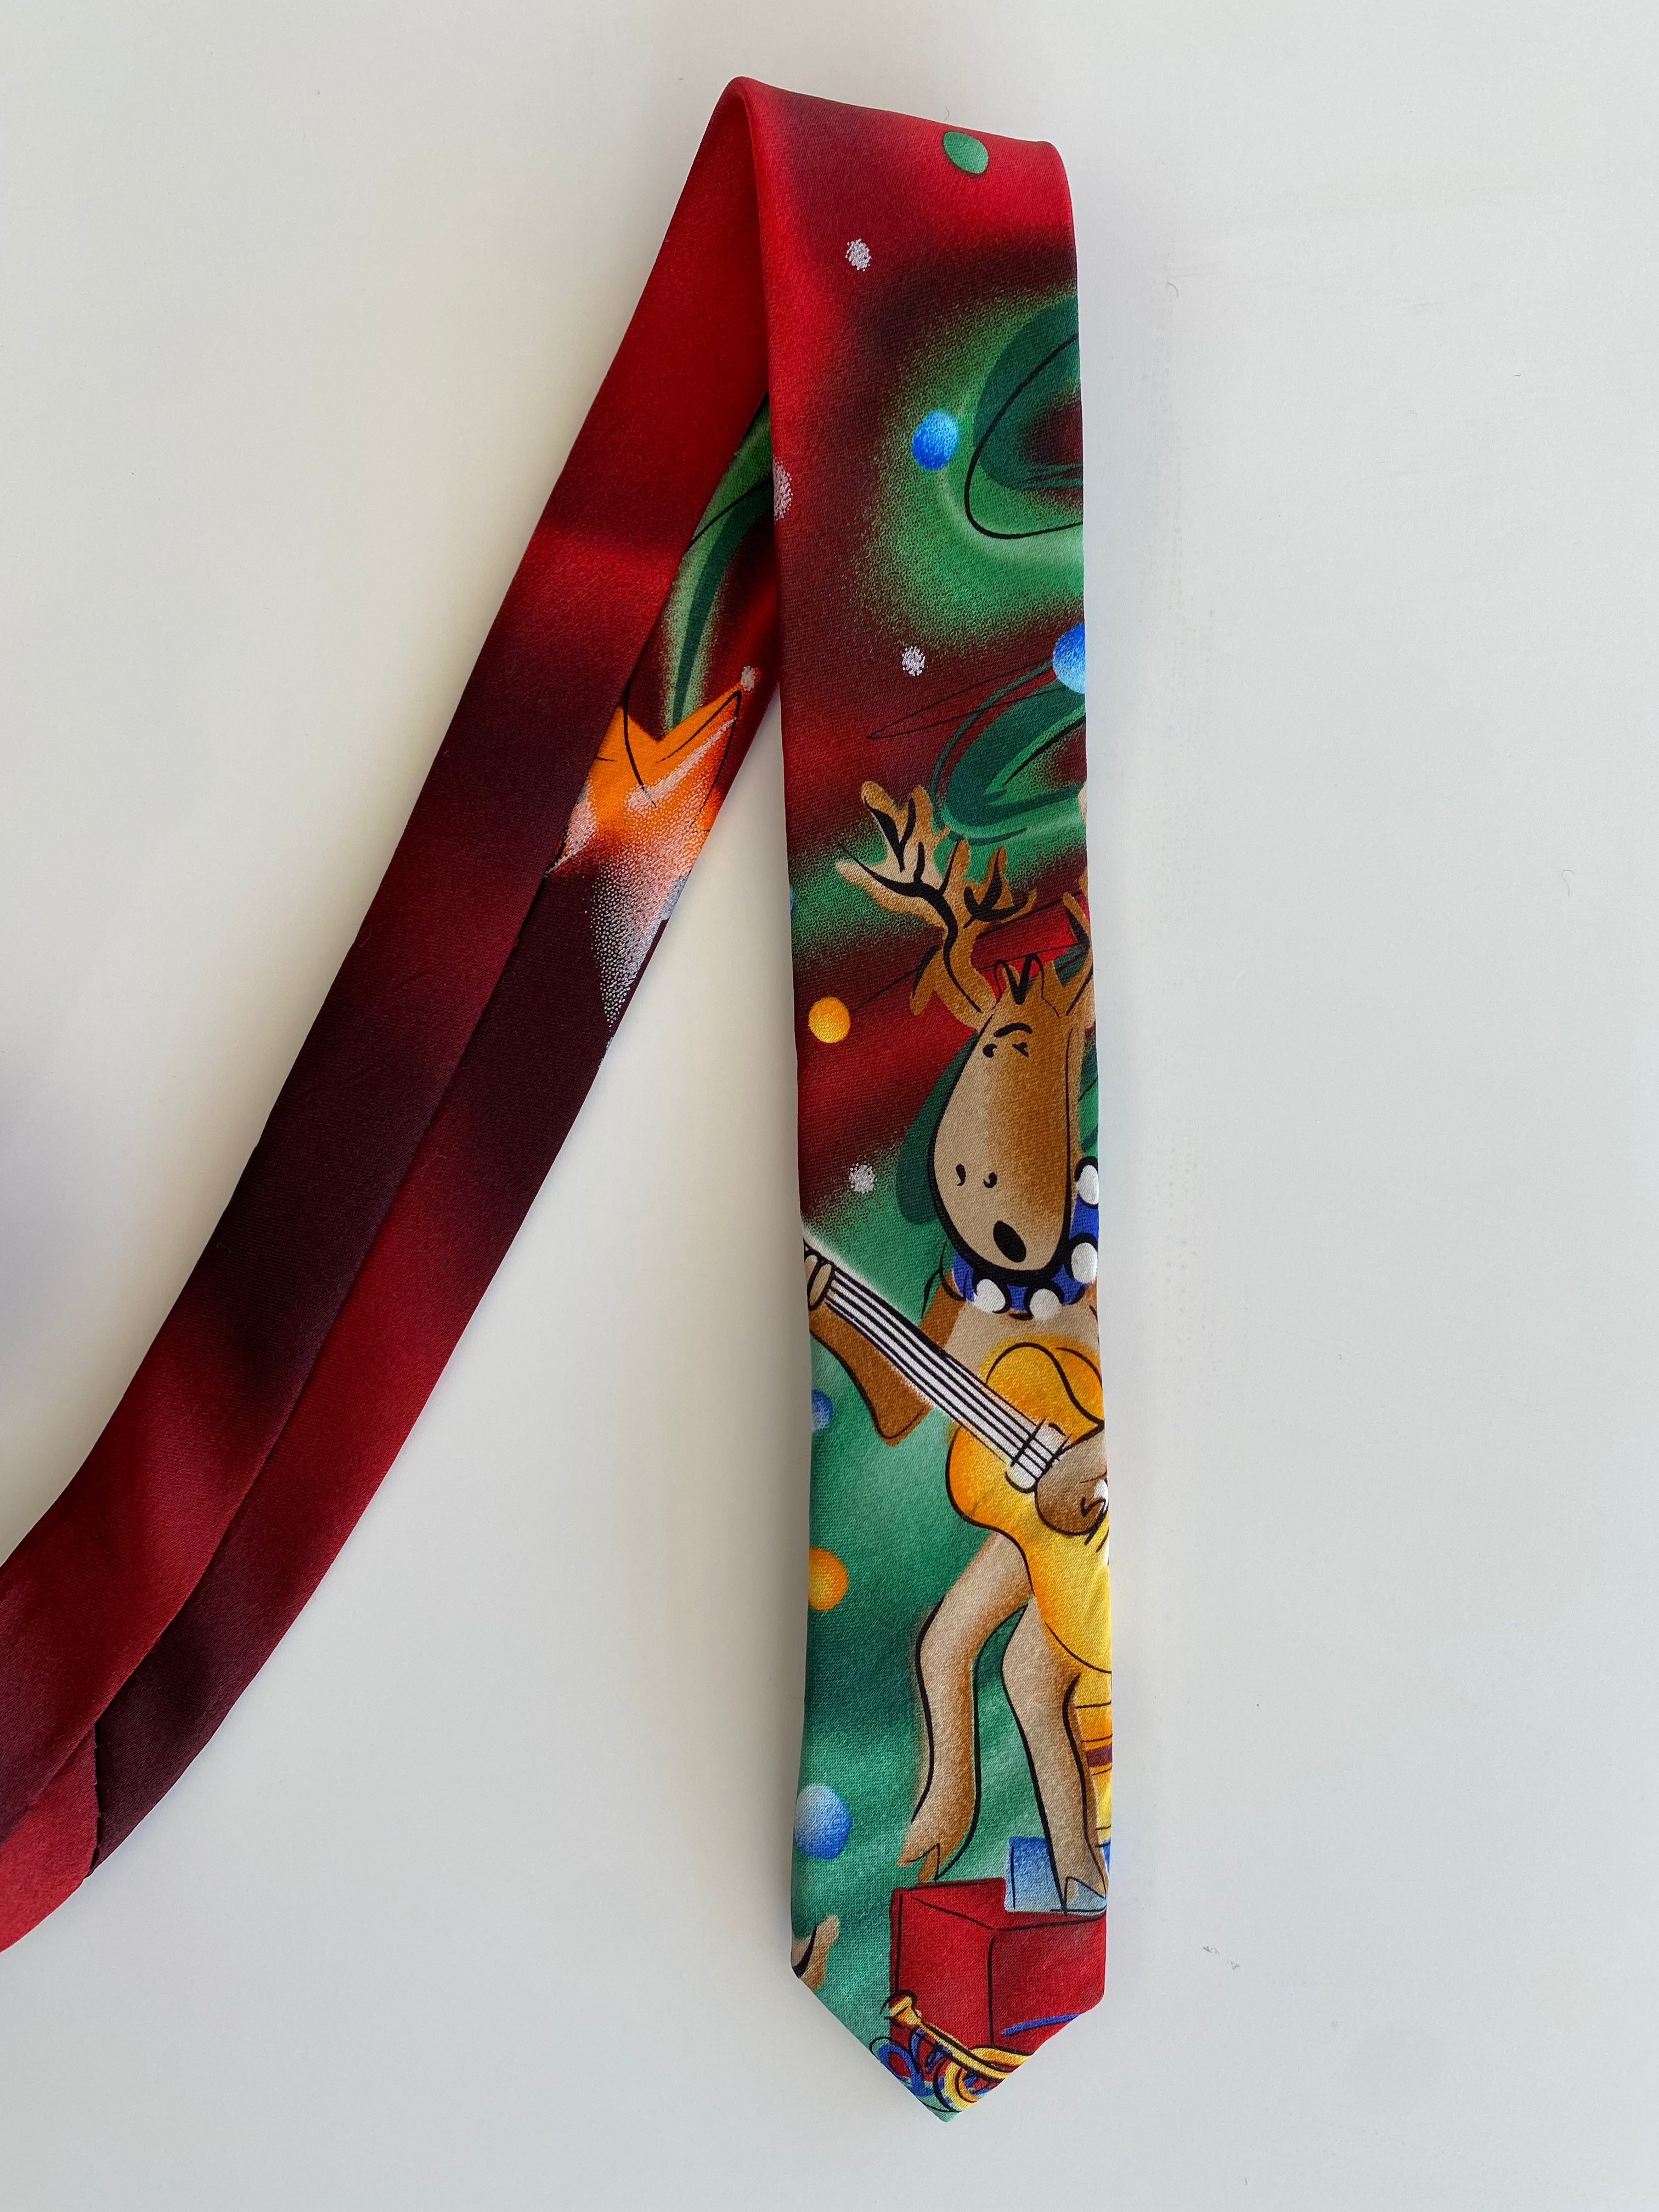 J.CARCIA Christmas Tie - Balagan Vintage Ties 00s, 90s, Christmas, outerwear, print, printed tie, ties, vintage, vintage tie